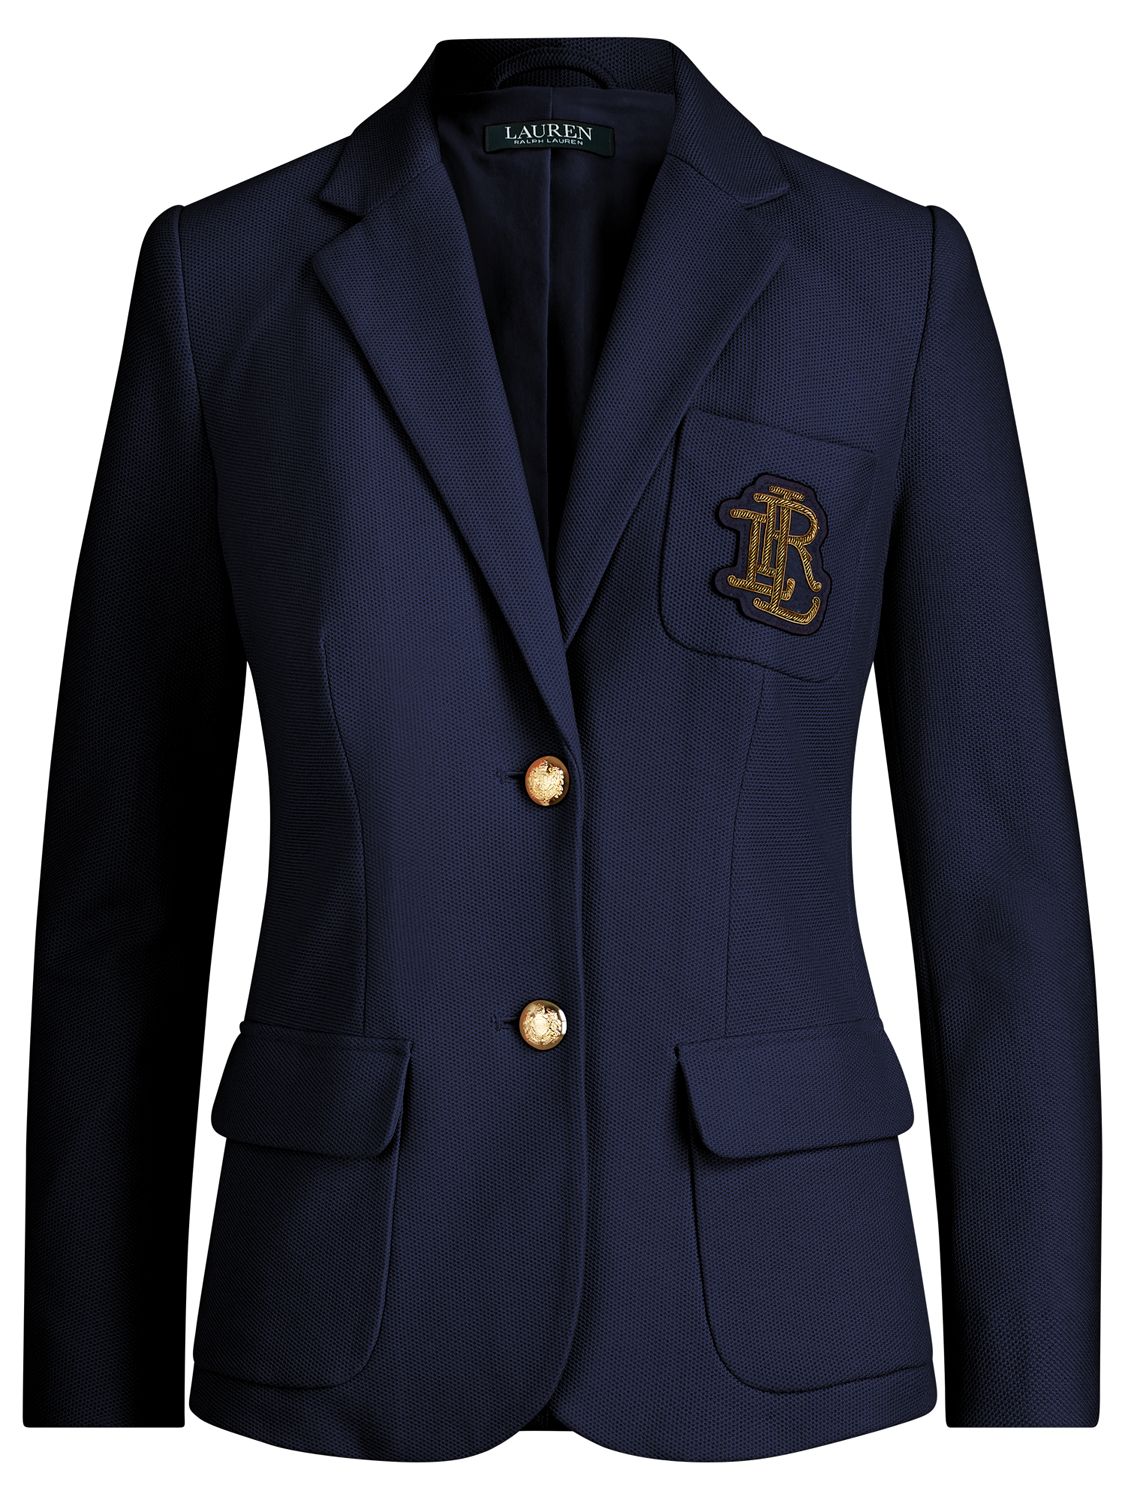 polo blazer with crest